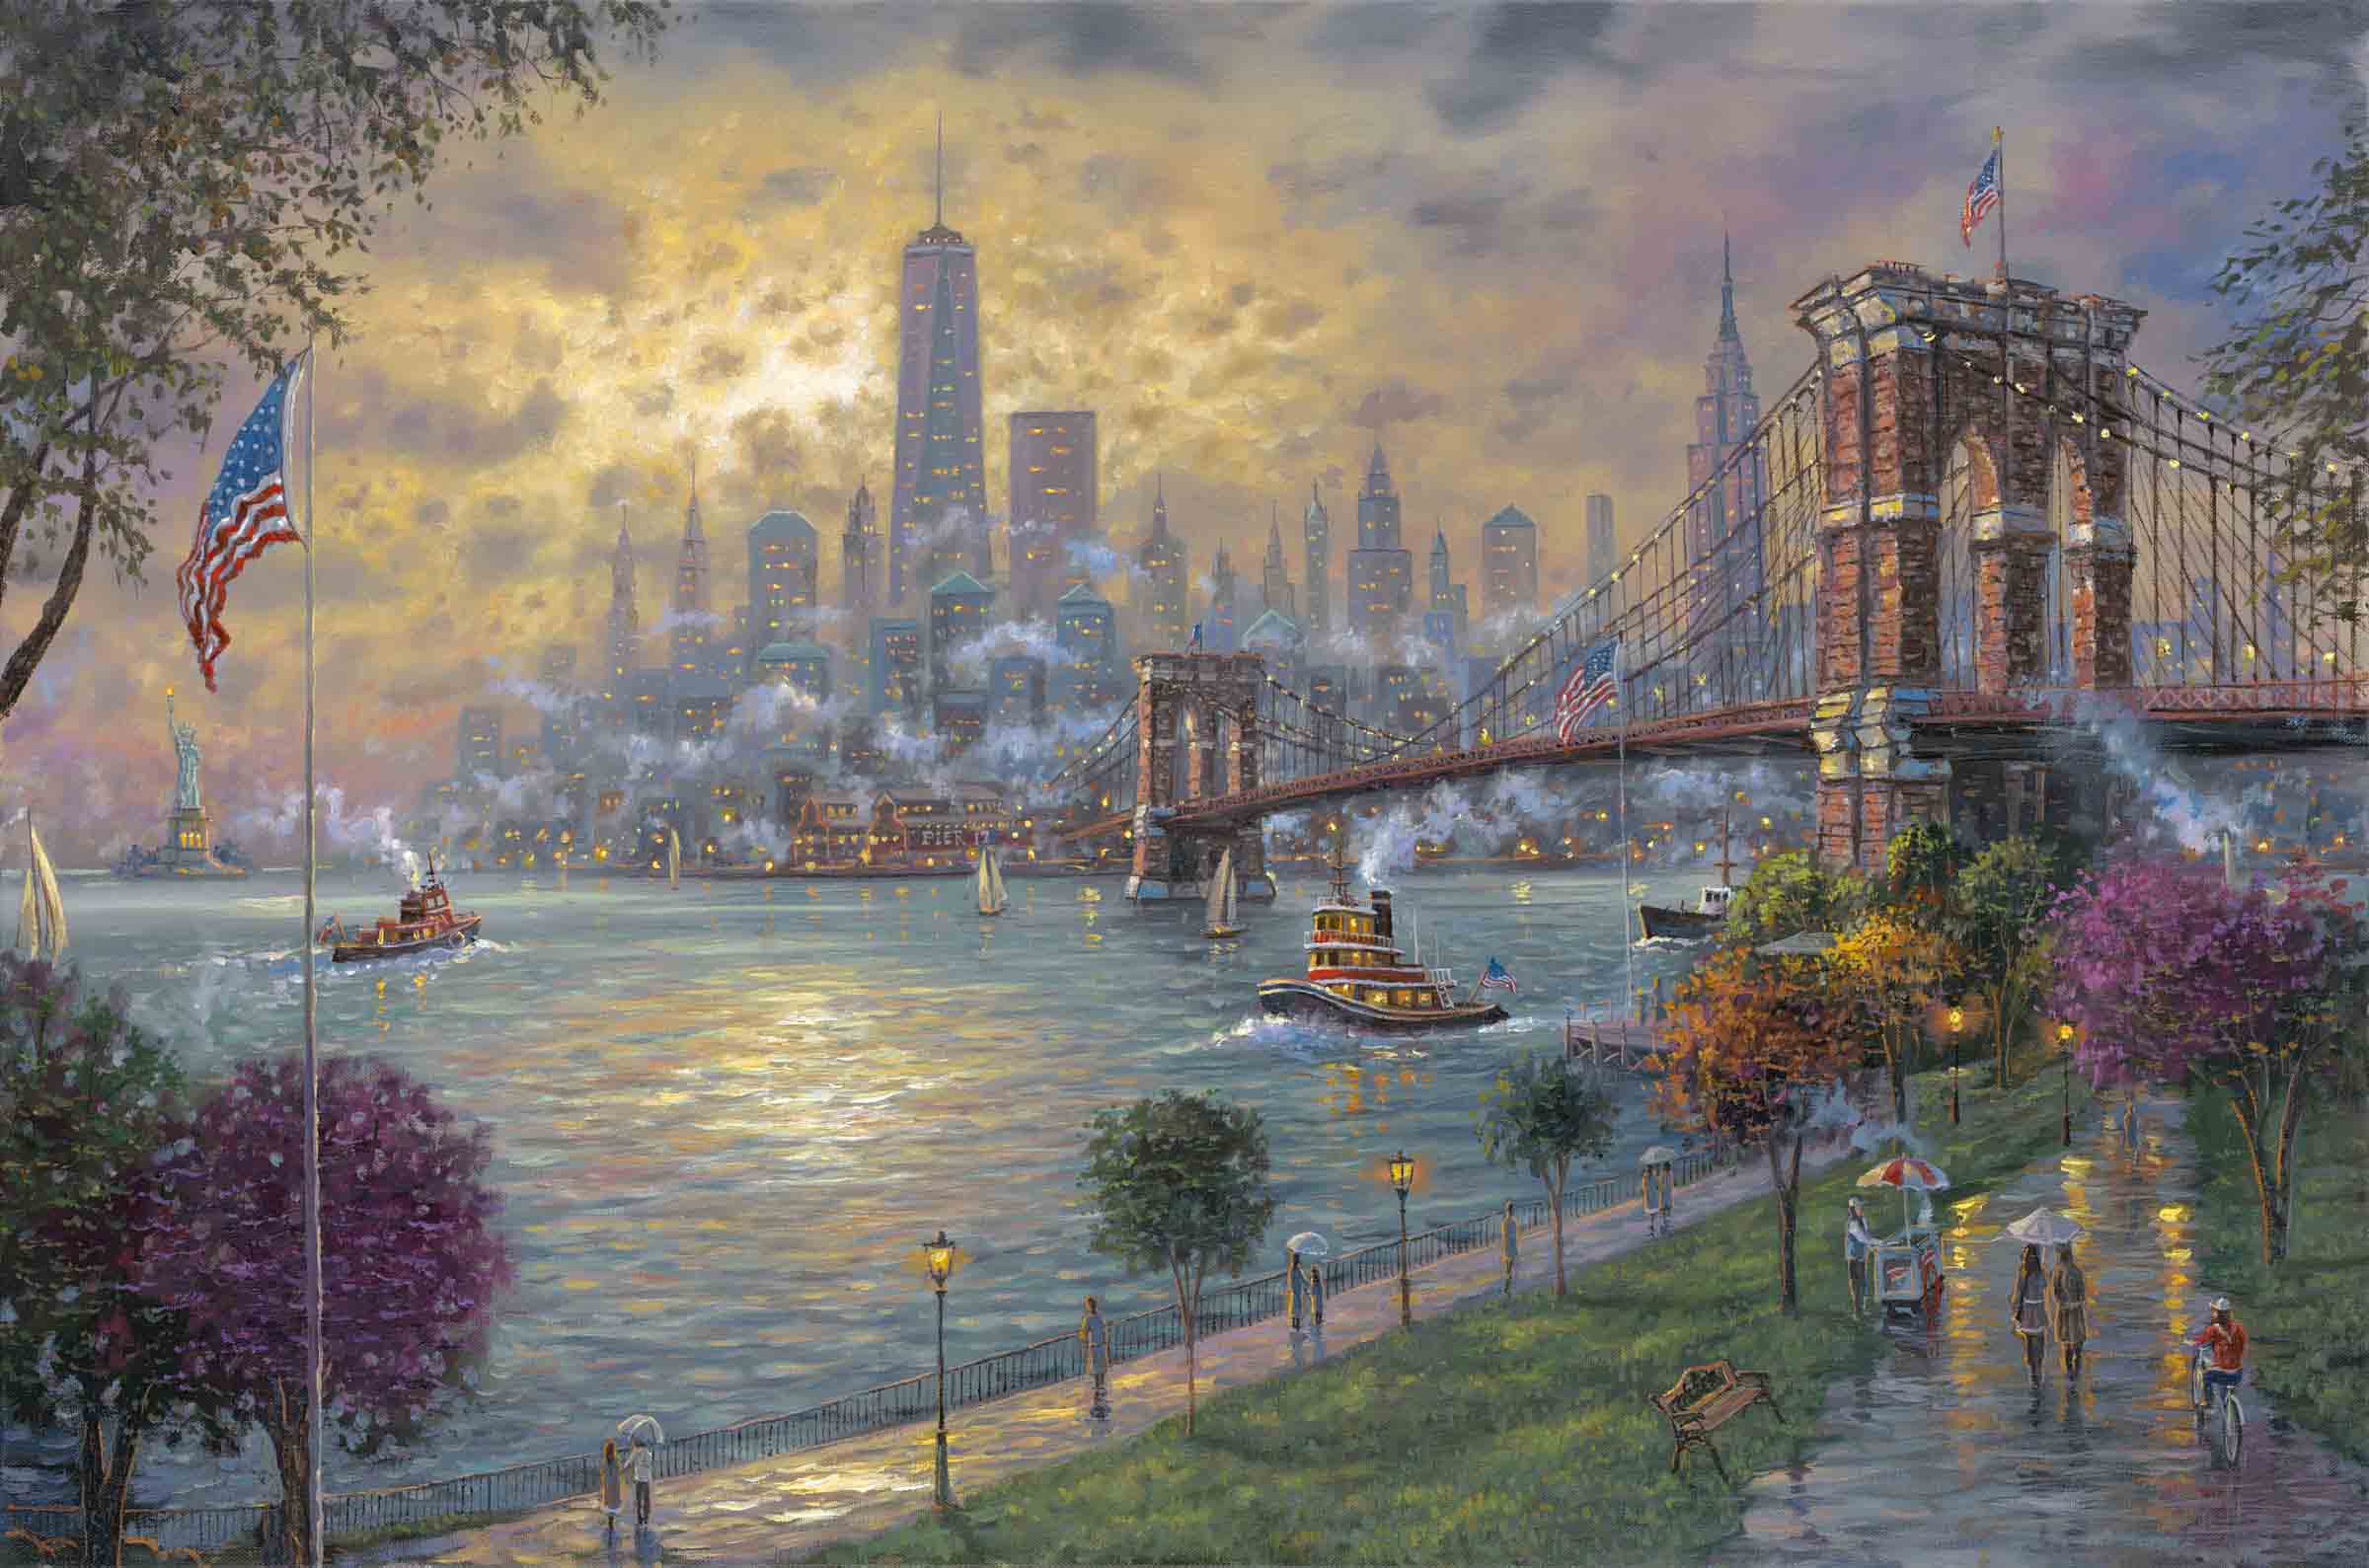 New York Memories by Robert Finale